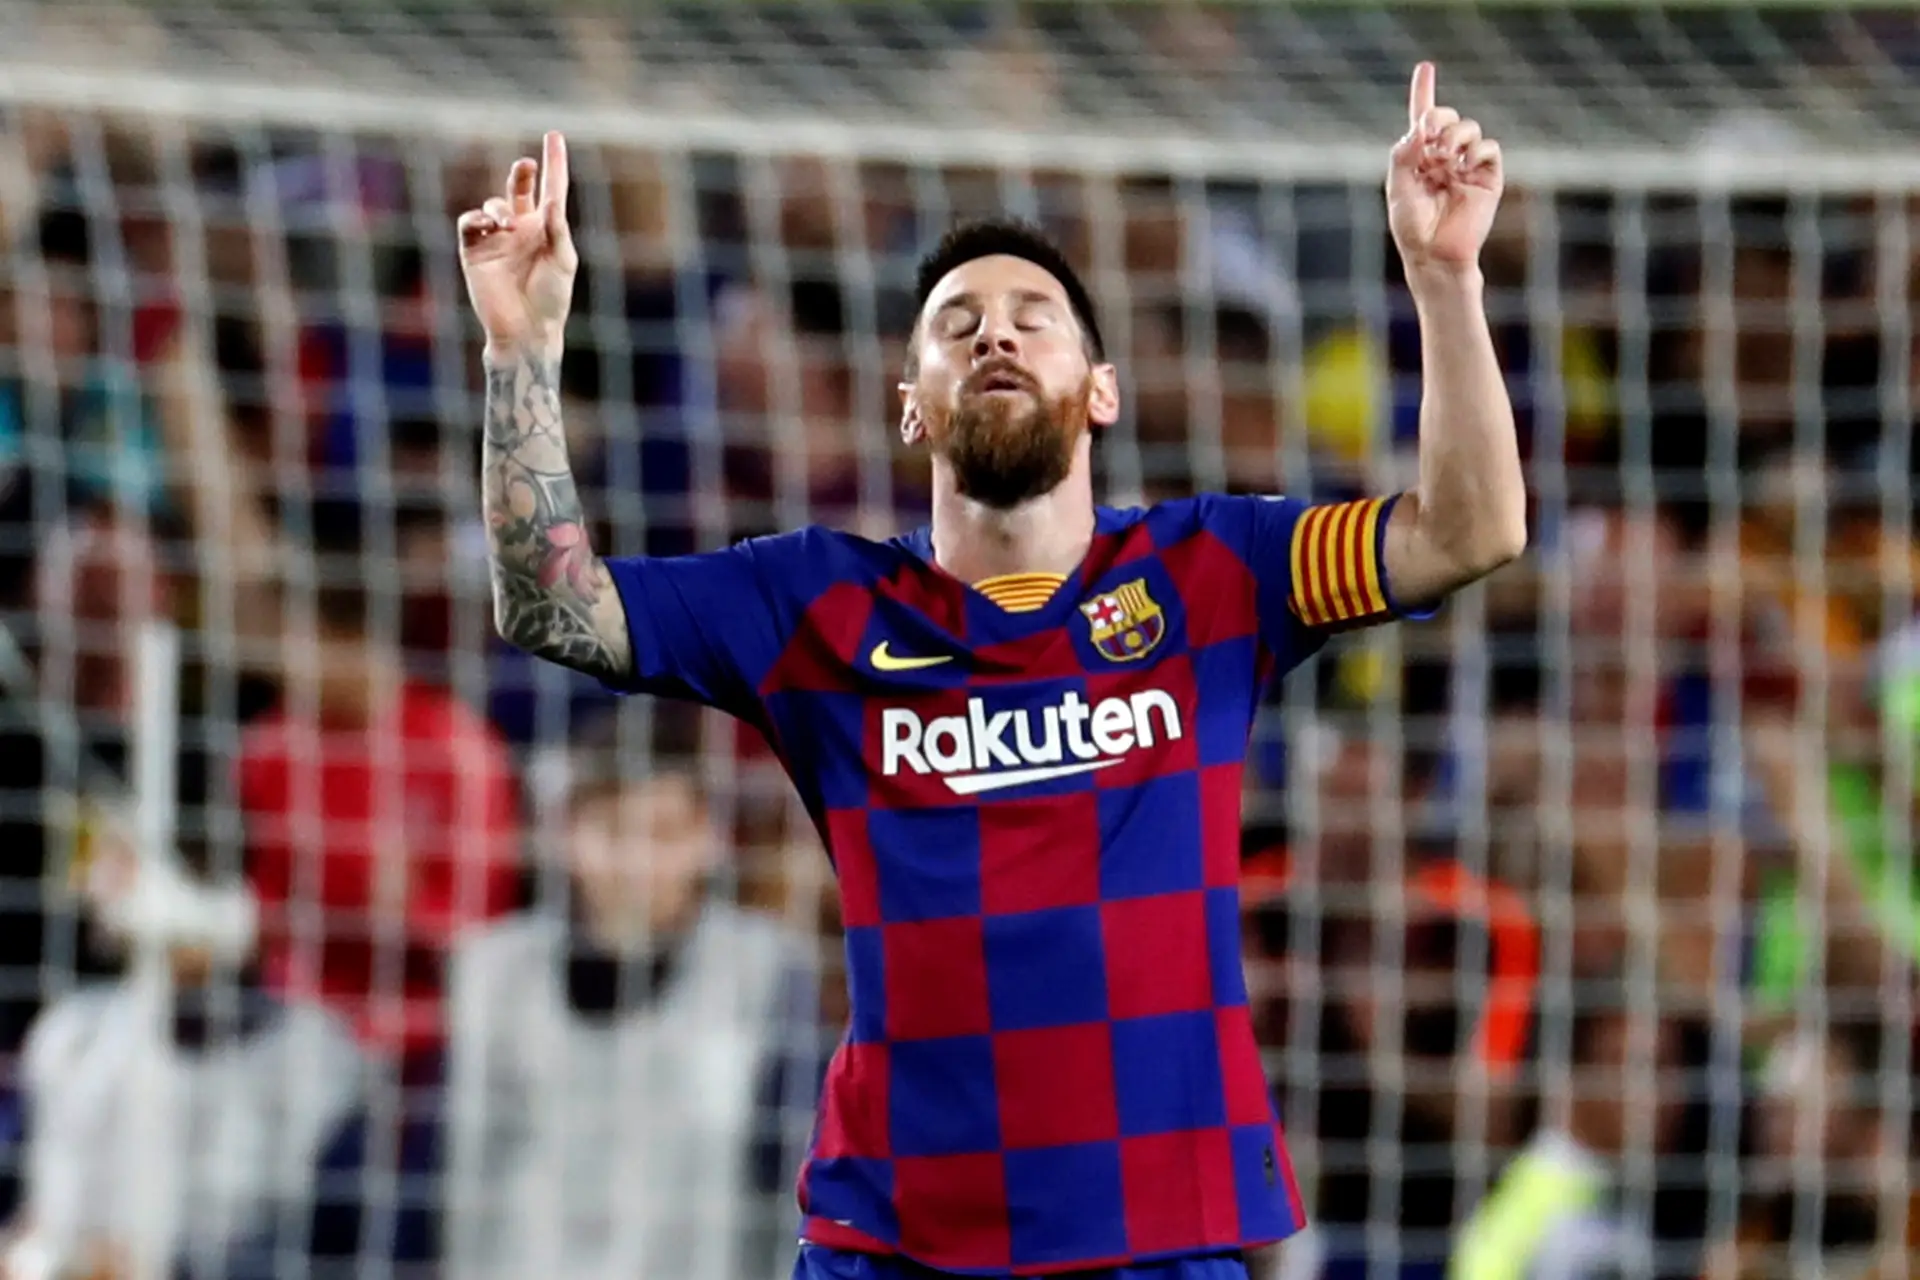 Melhores do Mundo Fifa— Sem CR7 e Messi, by Fábio Gomes